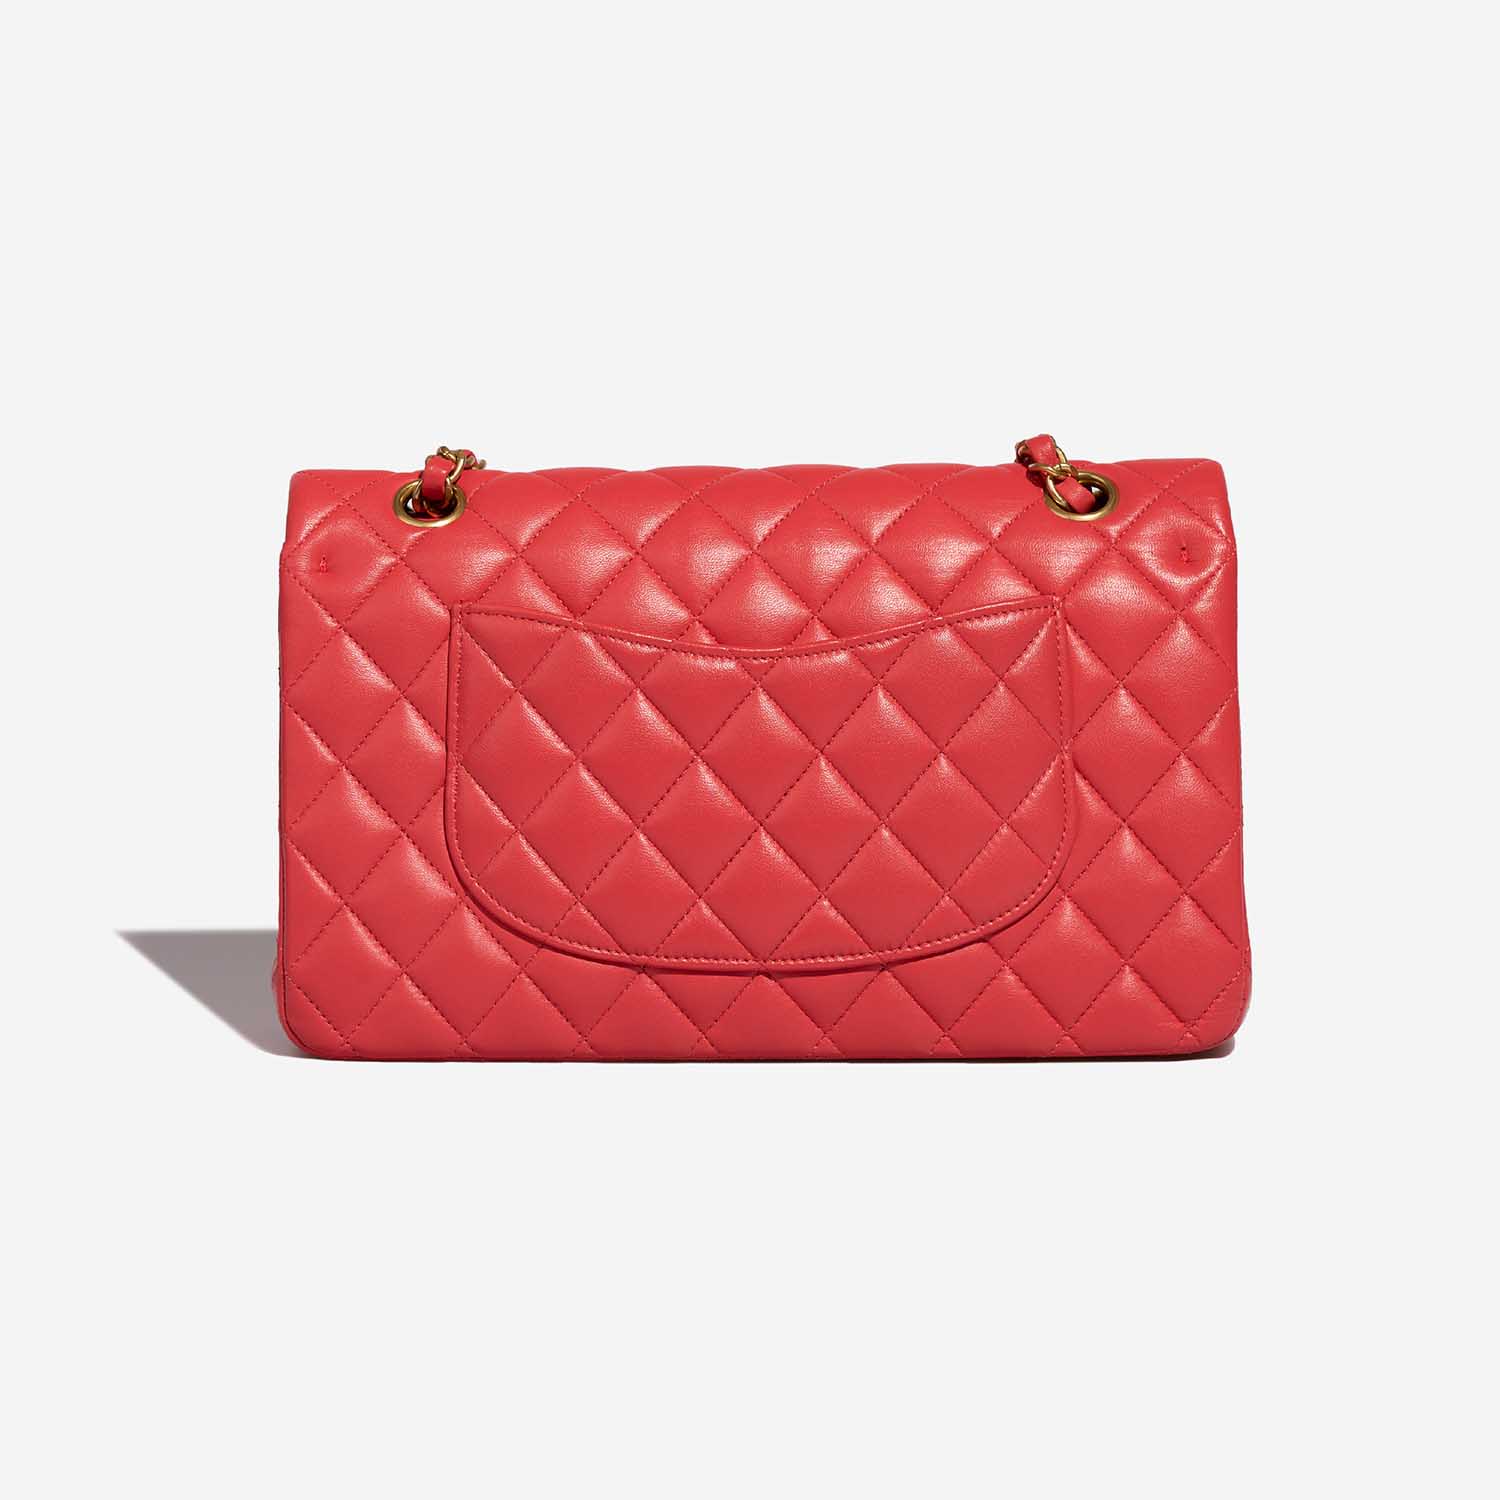 CHanel Timeless Medium Red Back | Verkaufen Sie Ihre Designer-Tasche auf Saclab.com